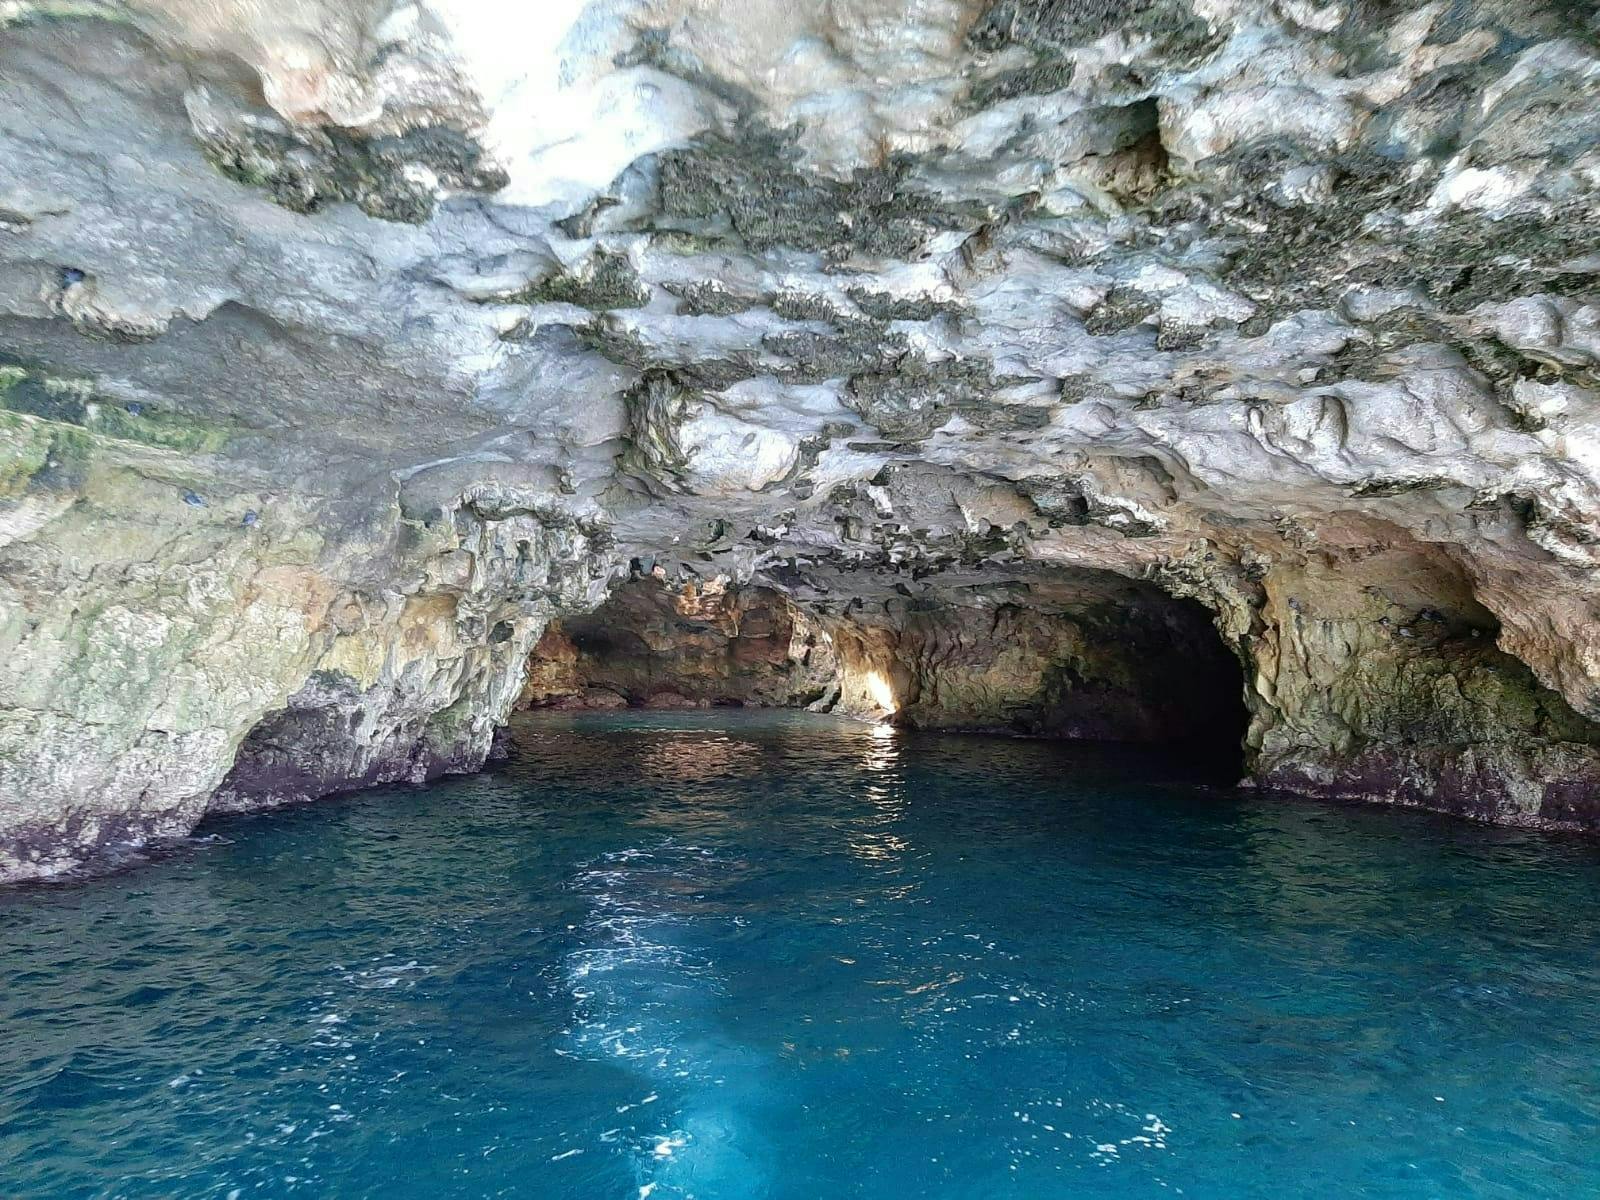 Crucero en Gozzo a las Cuevas de Polignano a Mare